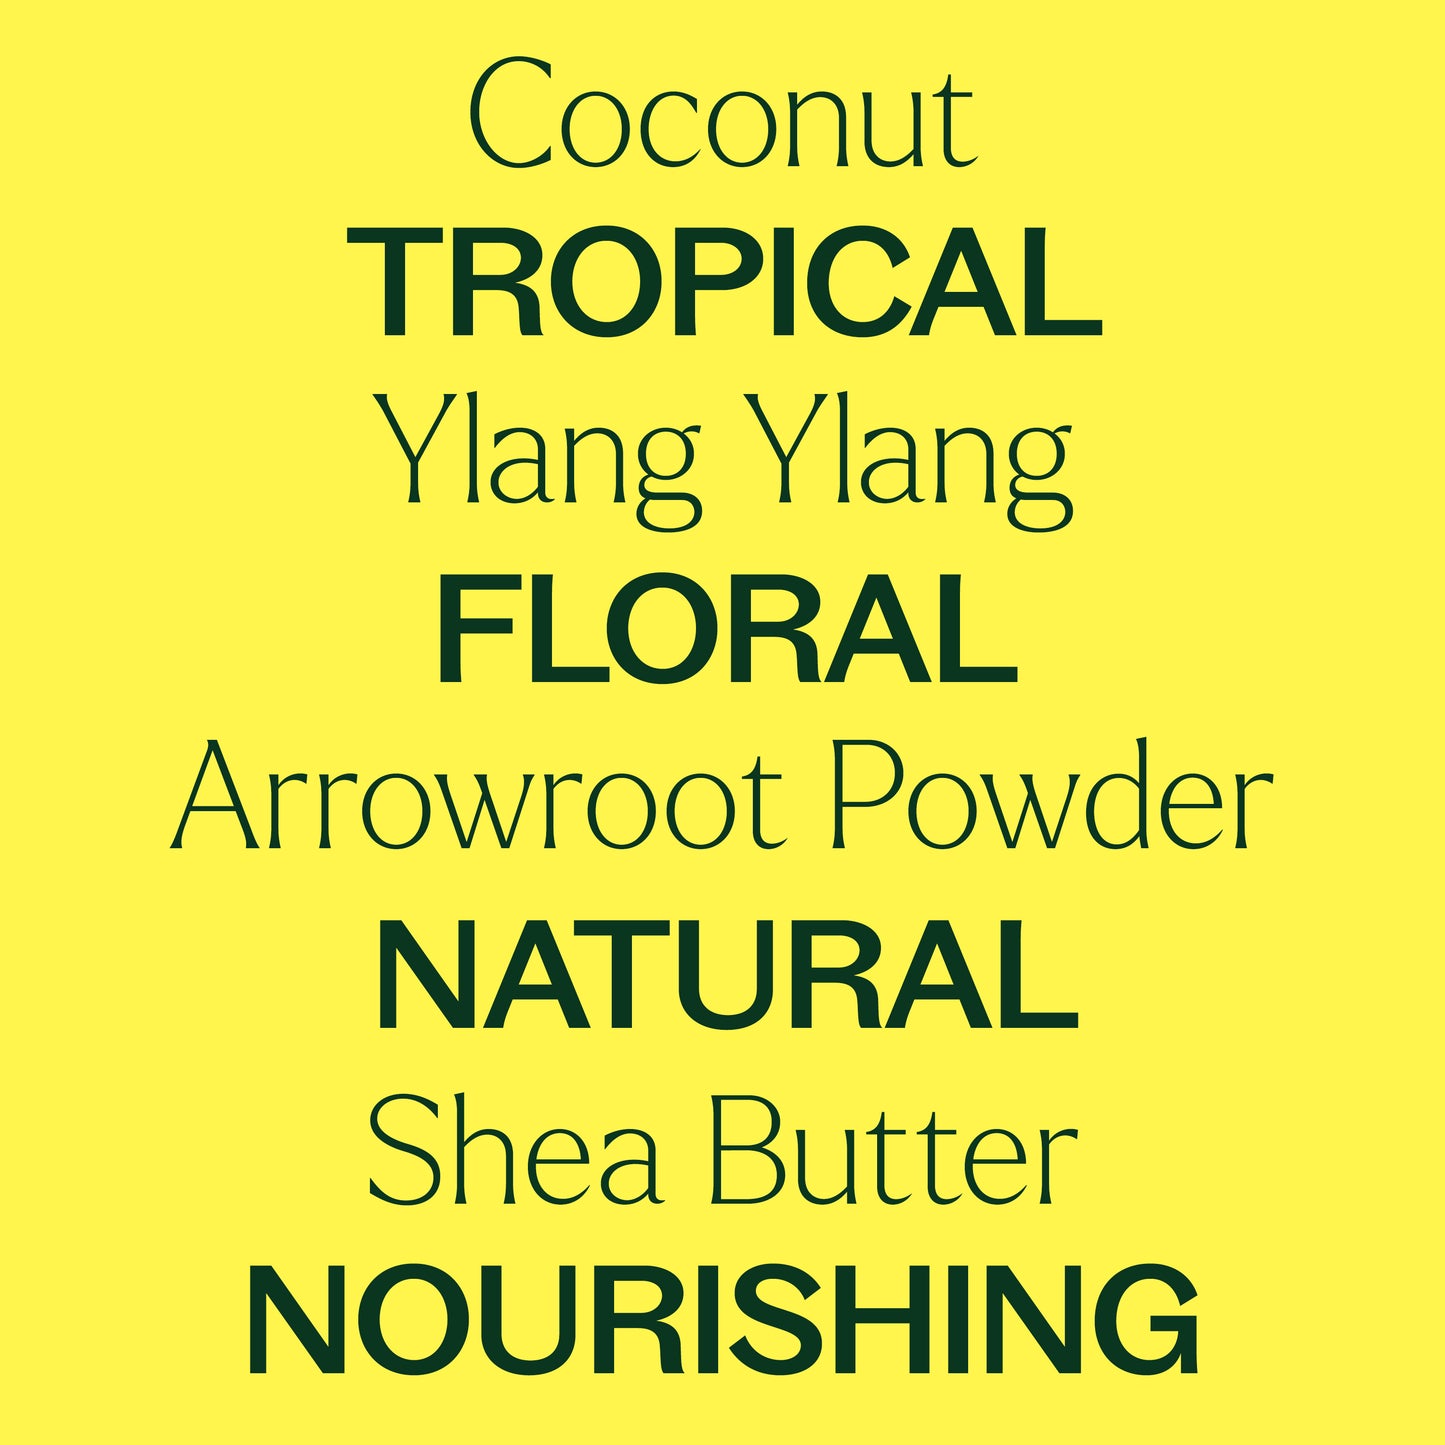 coconut, ylang ylang, arrowroot powder, shea butter. tropical, floral, natural, nourishing